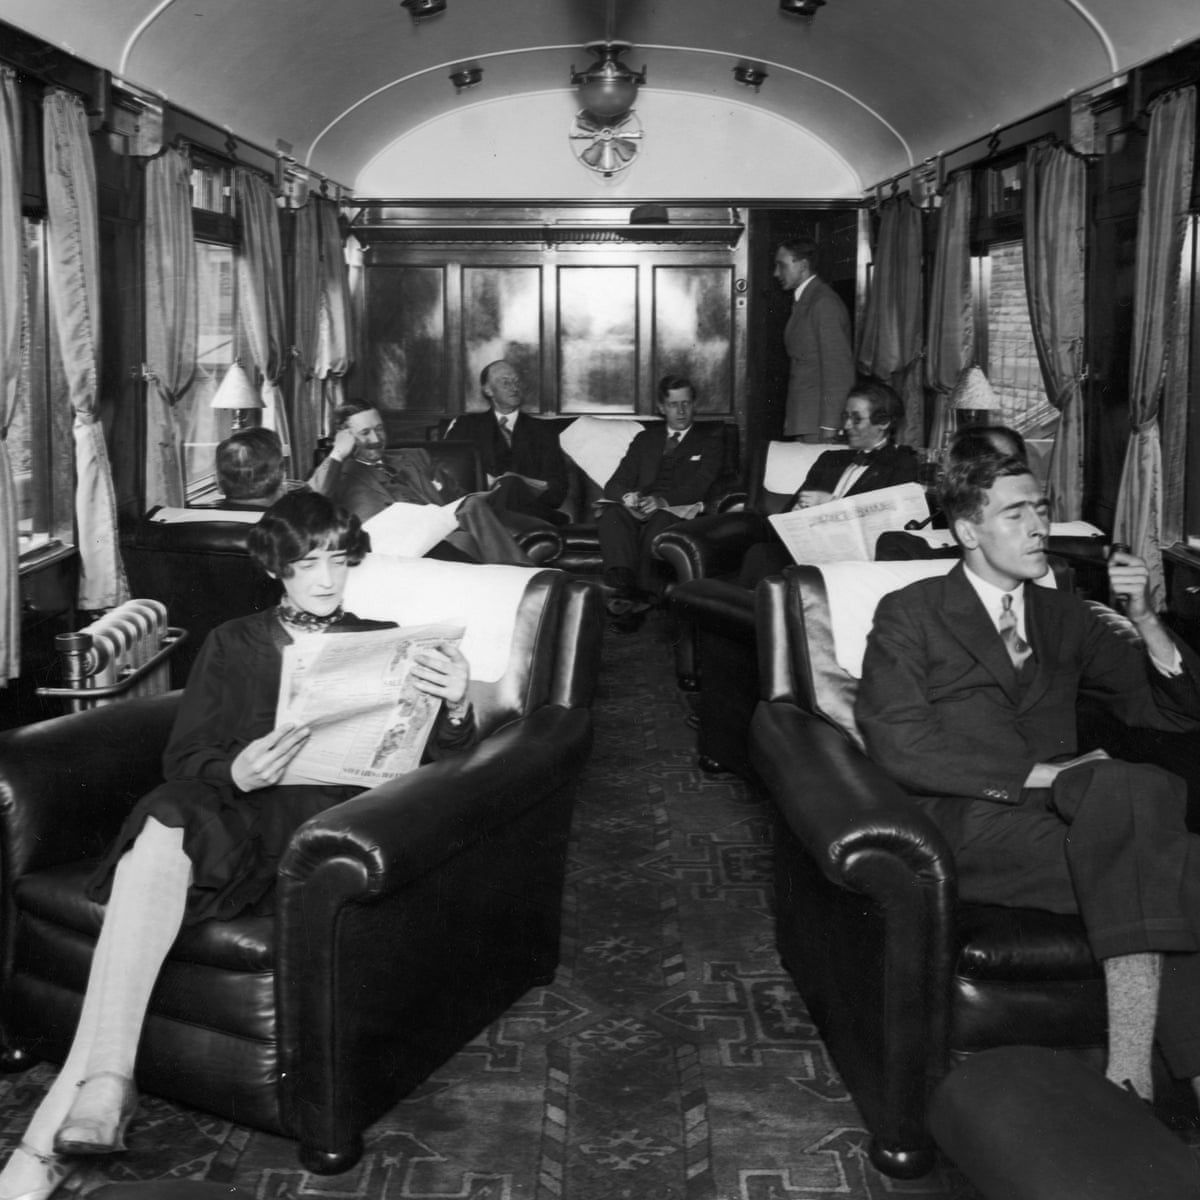 Fotos antigas mostram como eram glamorosas as viagens de trem entre 1900-1940 07